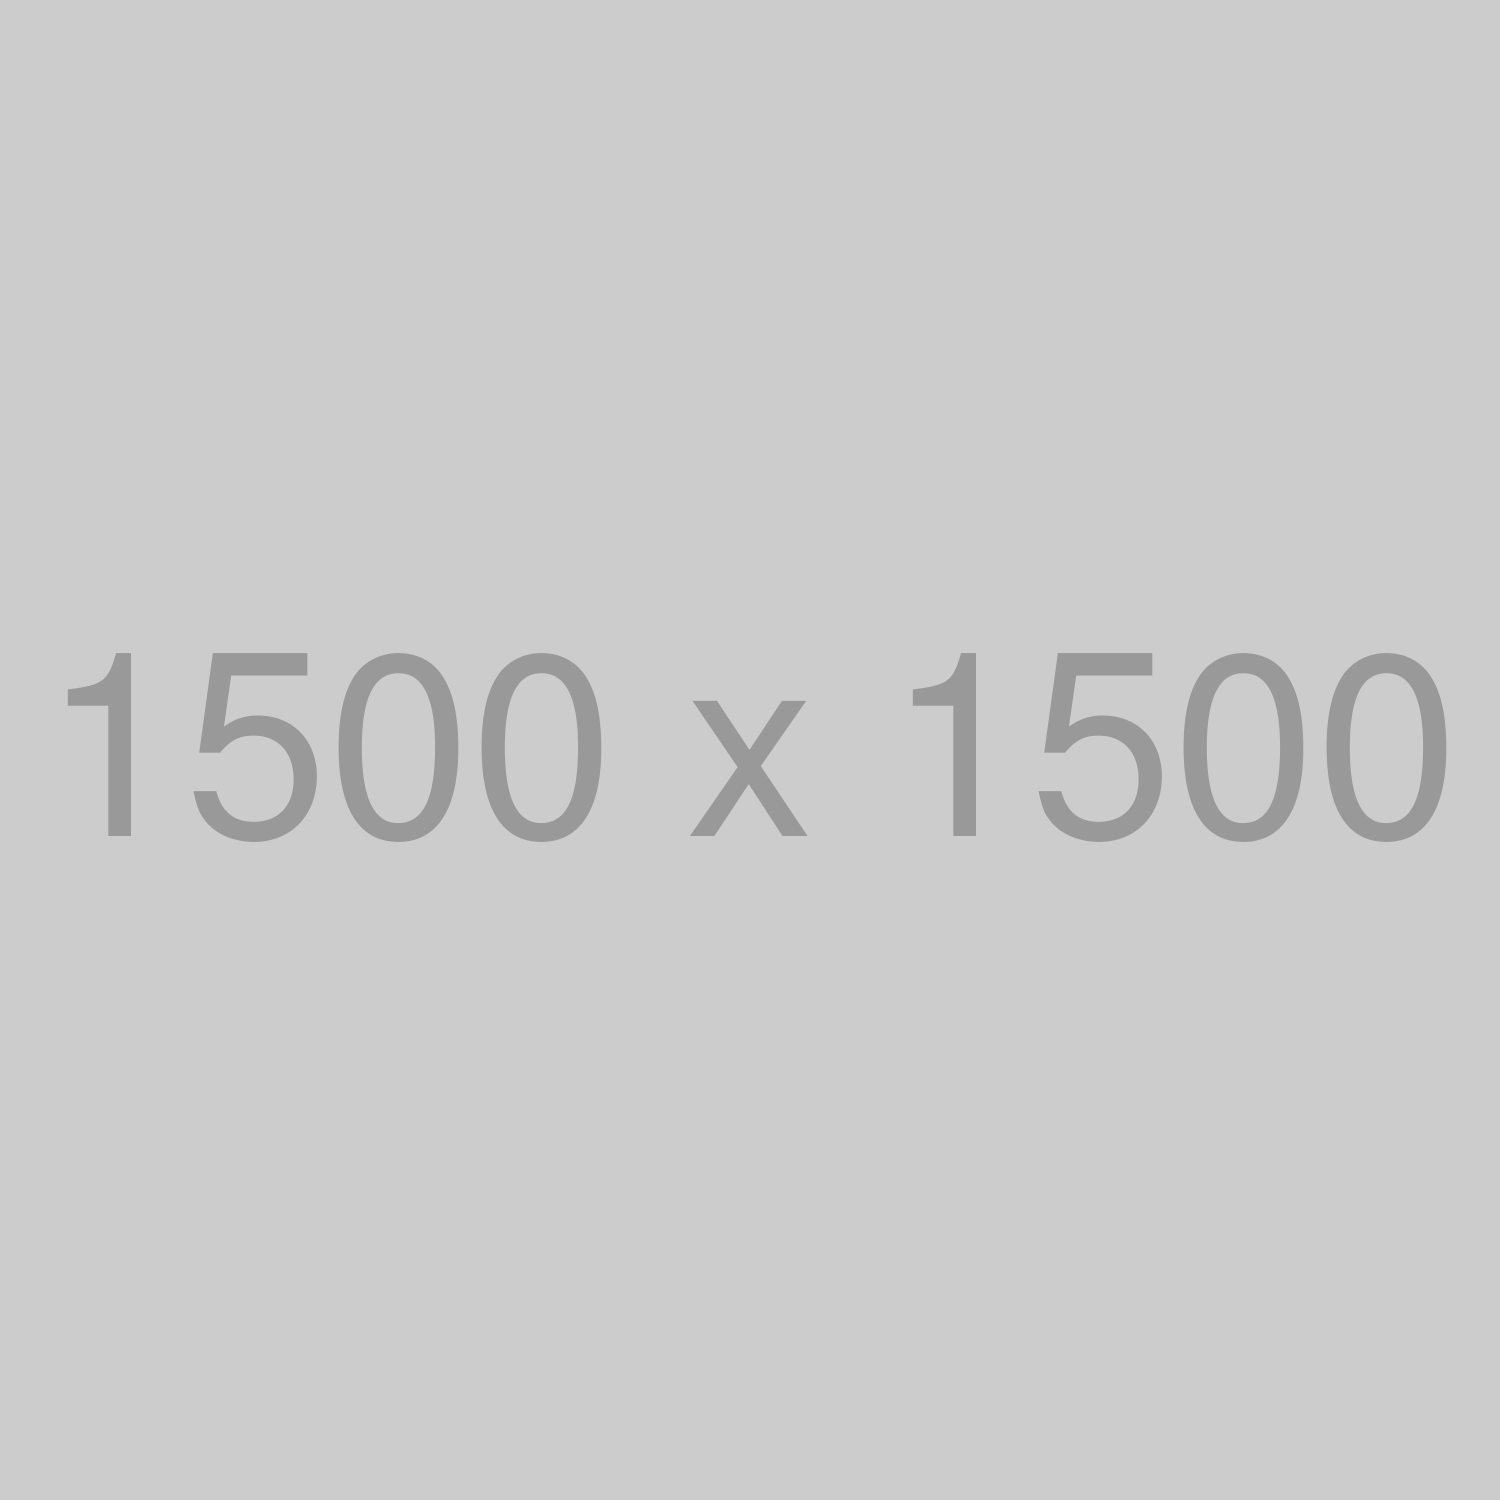 test/1500x1500